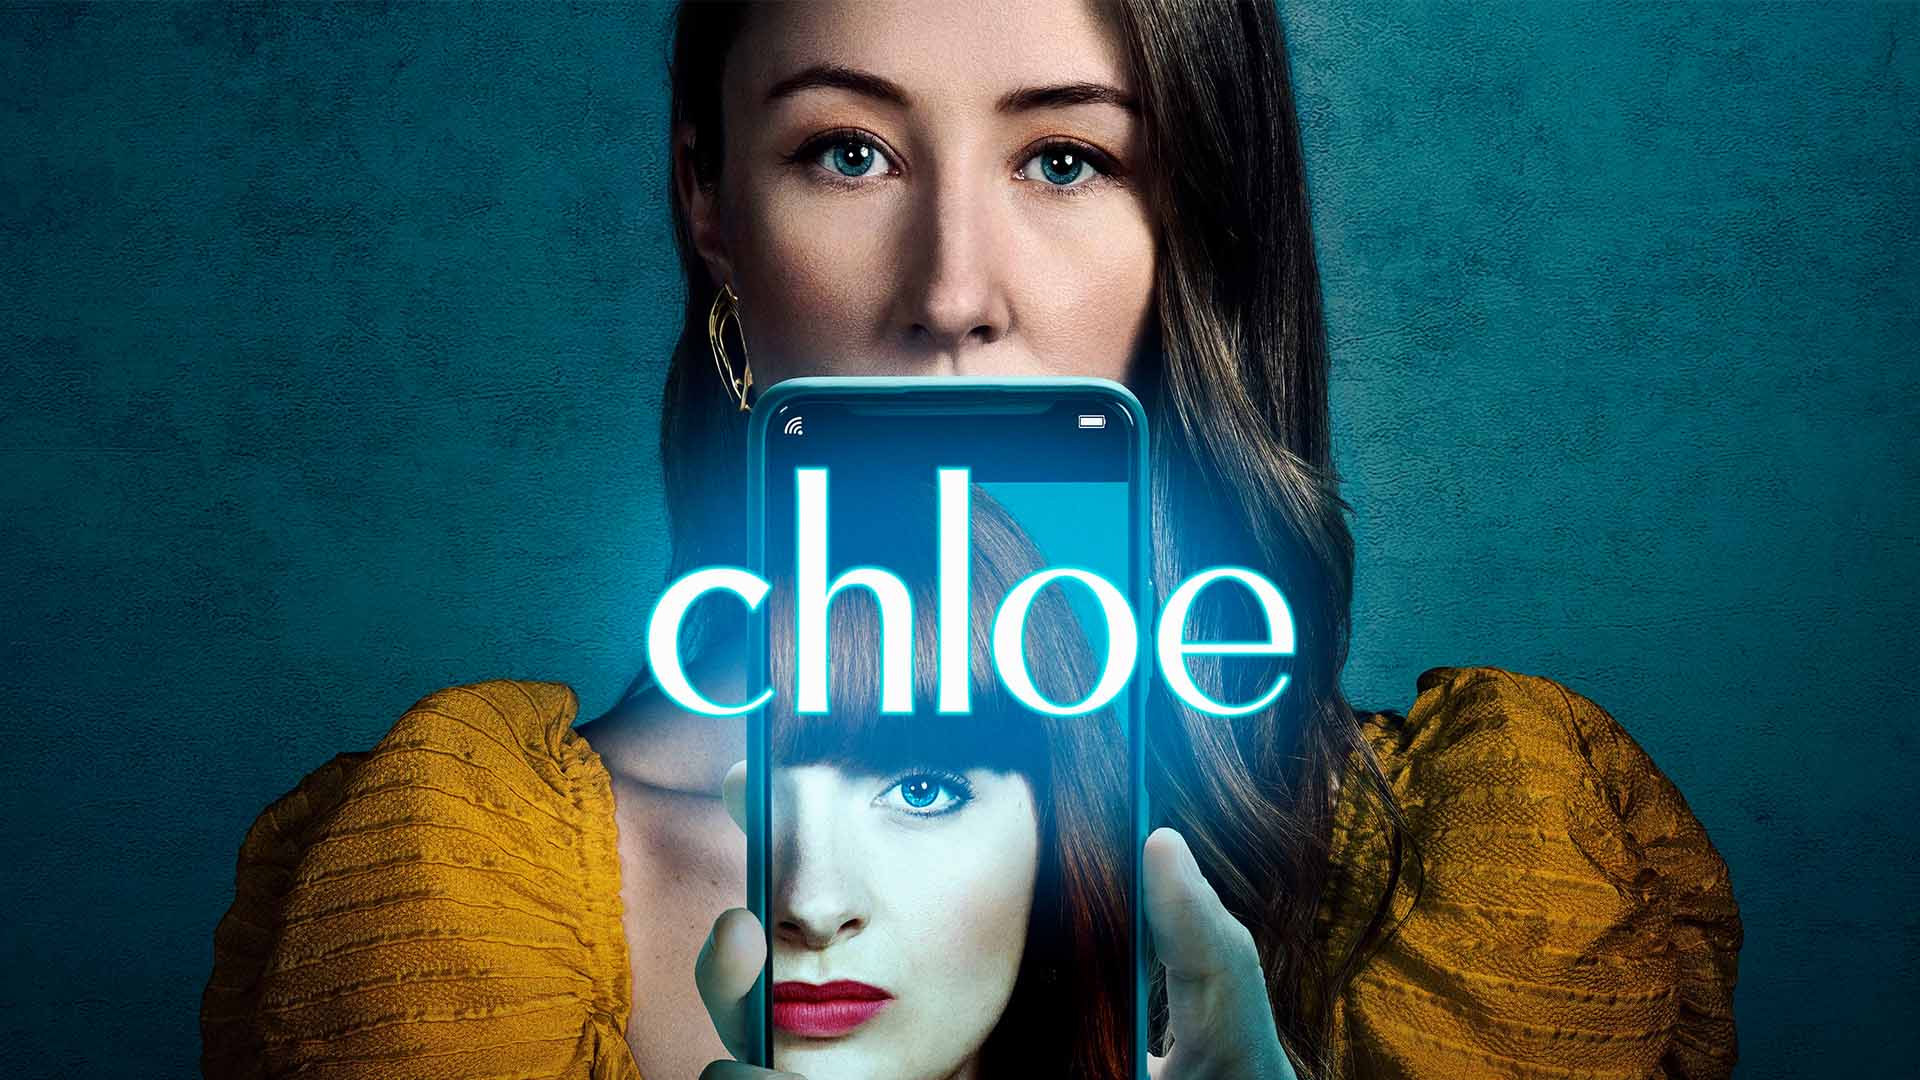 معرفی سریال کلویی (Chloe) | لذت سرقت یک هویت